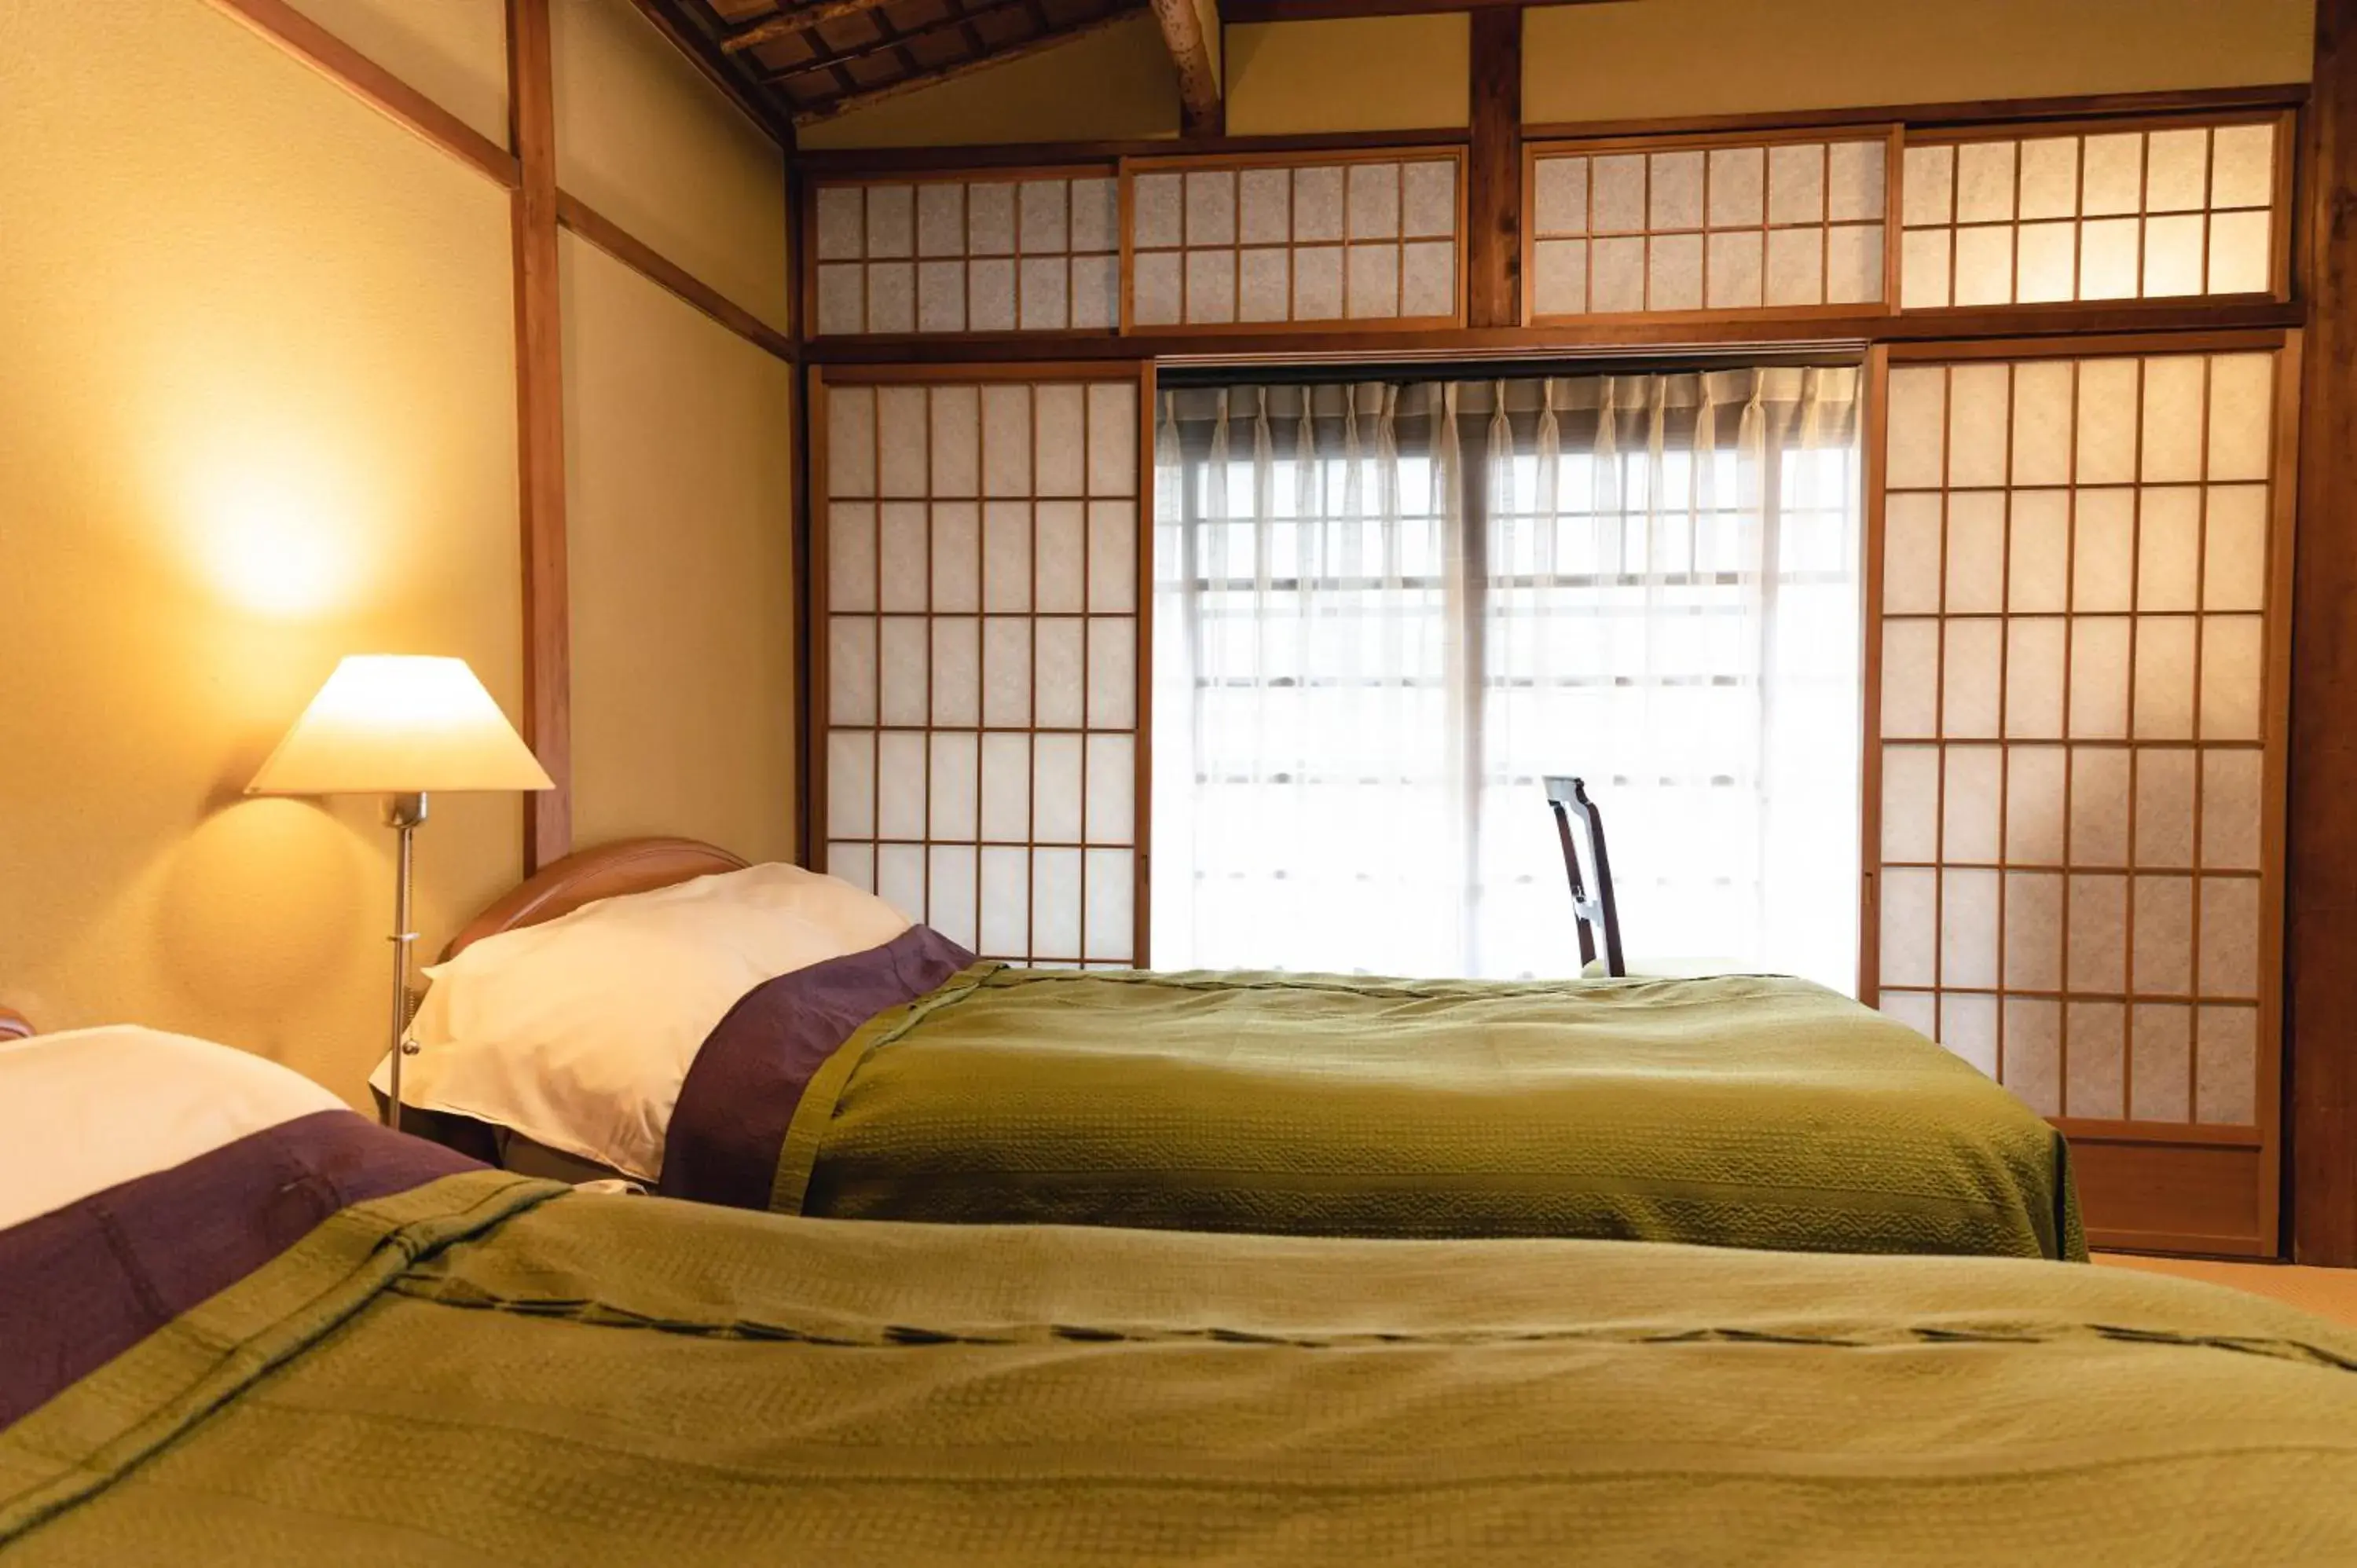 Deluxe Twin Room with Tatami Floor and Shared Bathroom - single occupancy in Hotel Hanakoyado